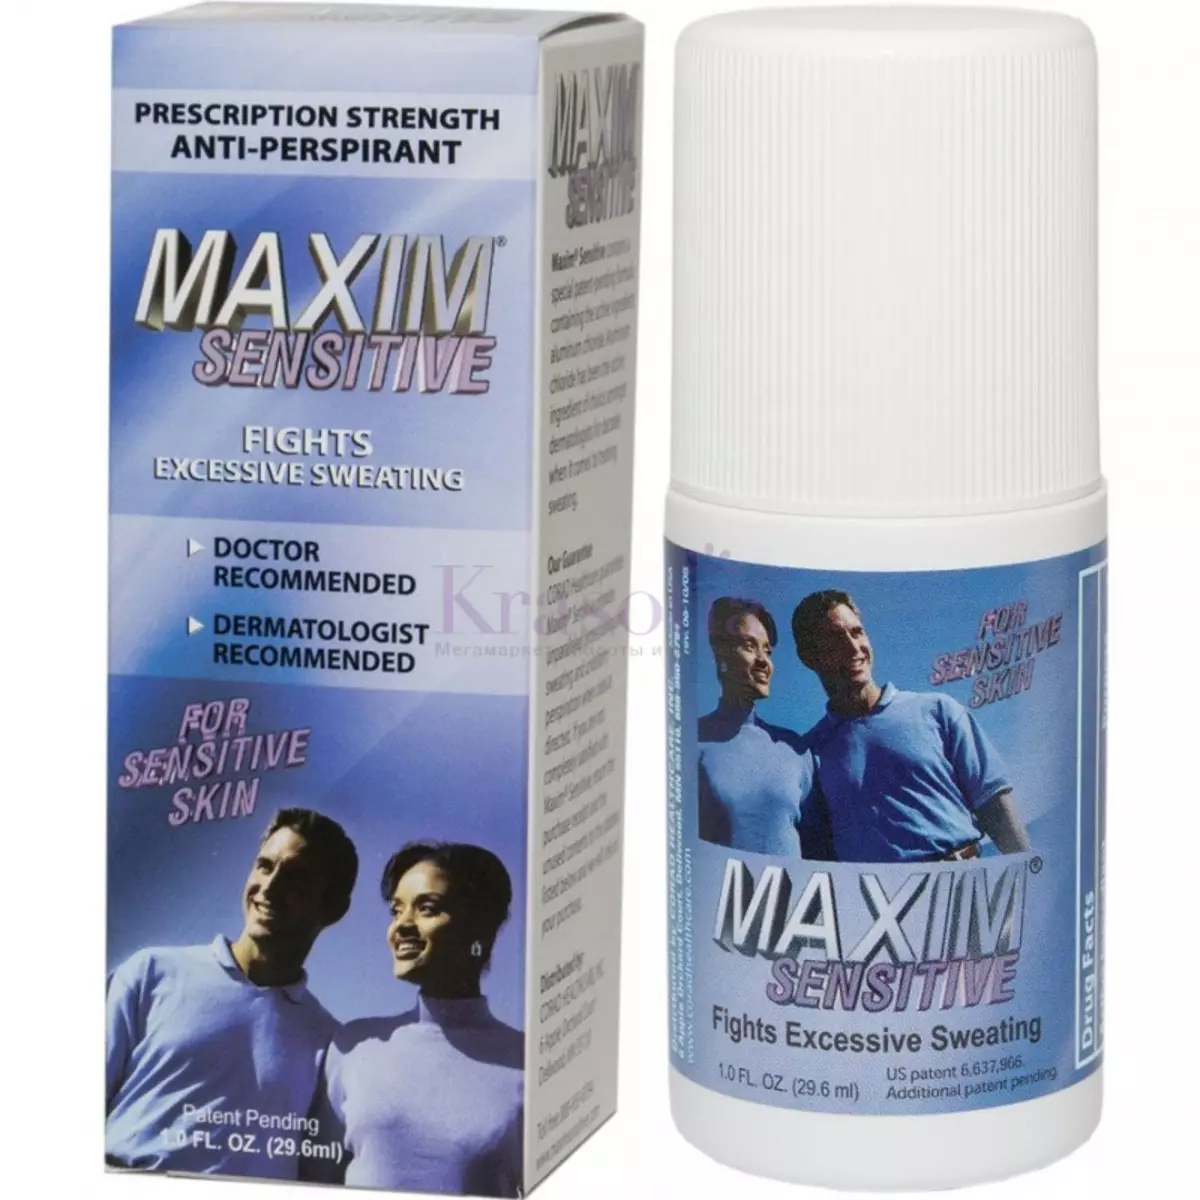 Maxim Deodorant: Përbërja e antiperspirantit dhe udhëzimeve për përdorimin e saj, shqyrton mjekët 4660_3